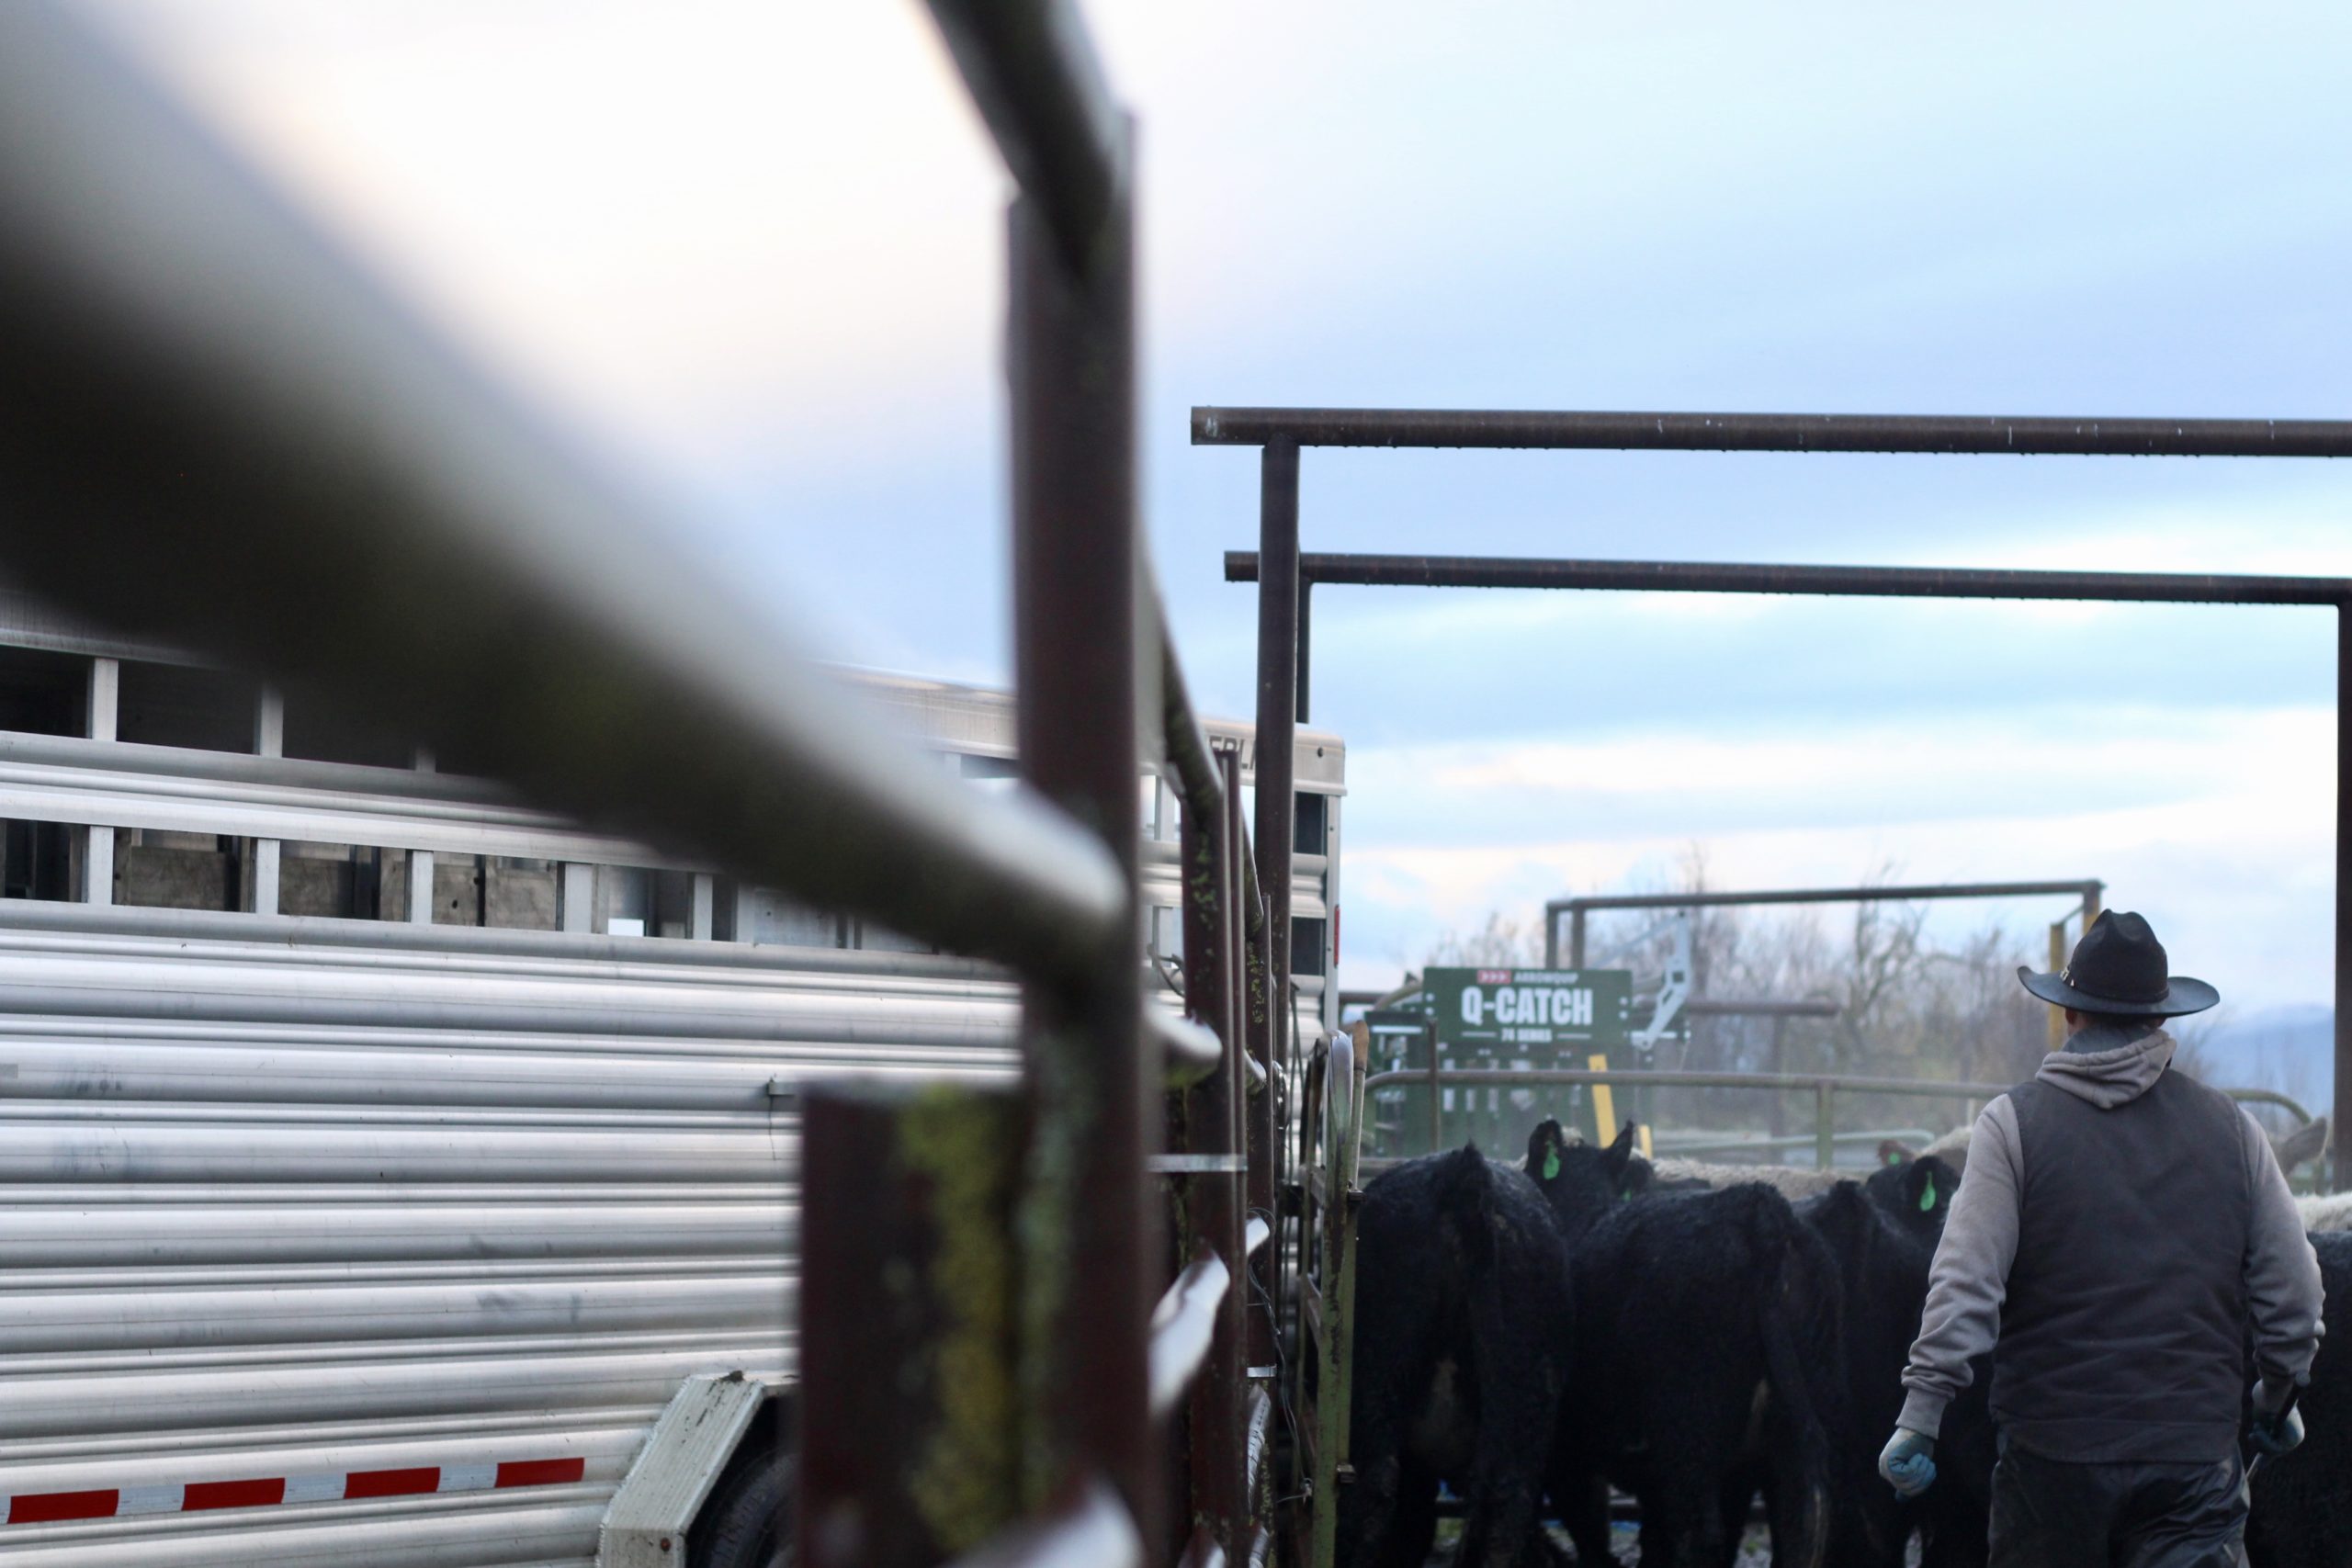 Loading calves into a gooseneck trailer.